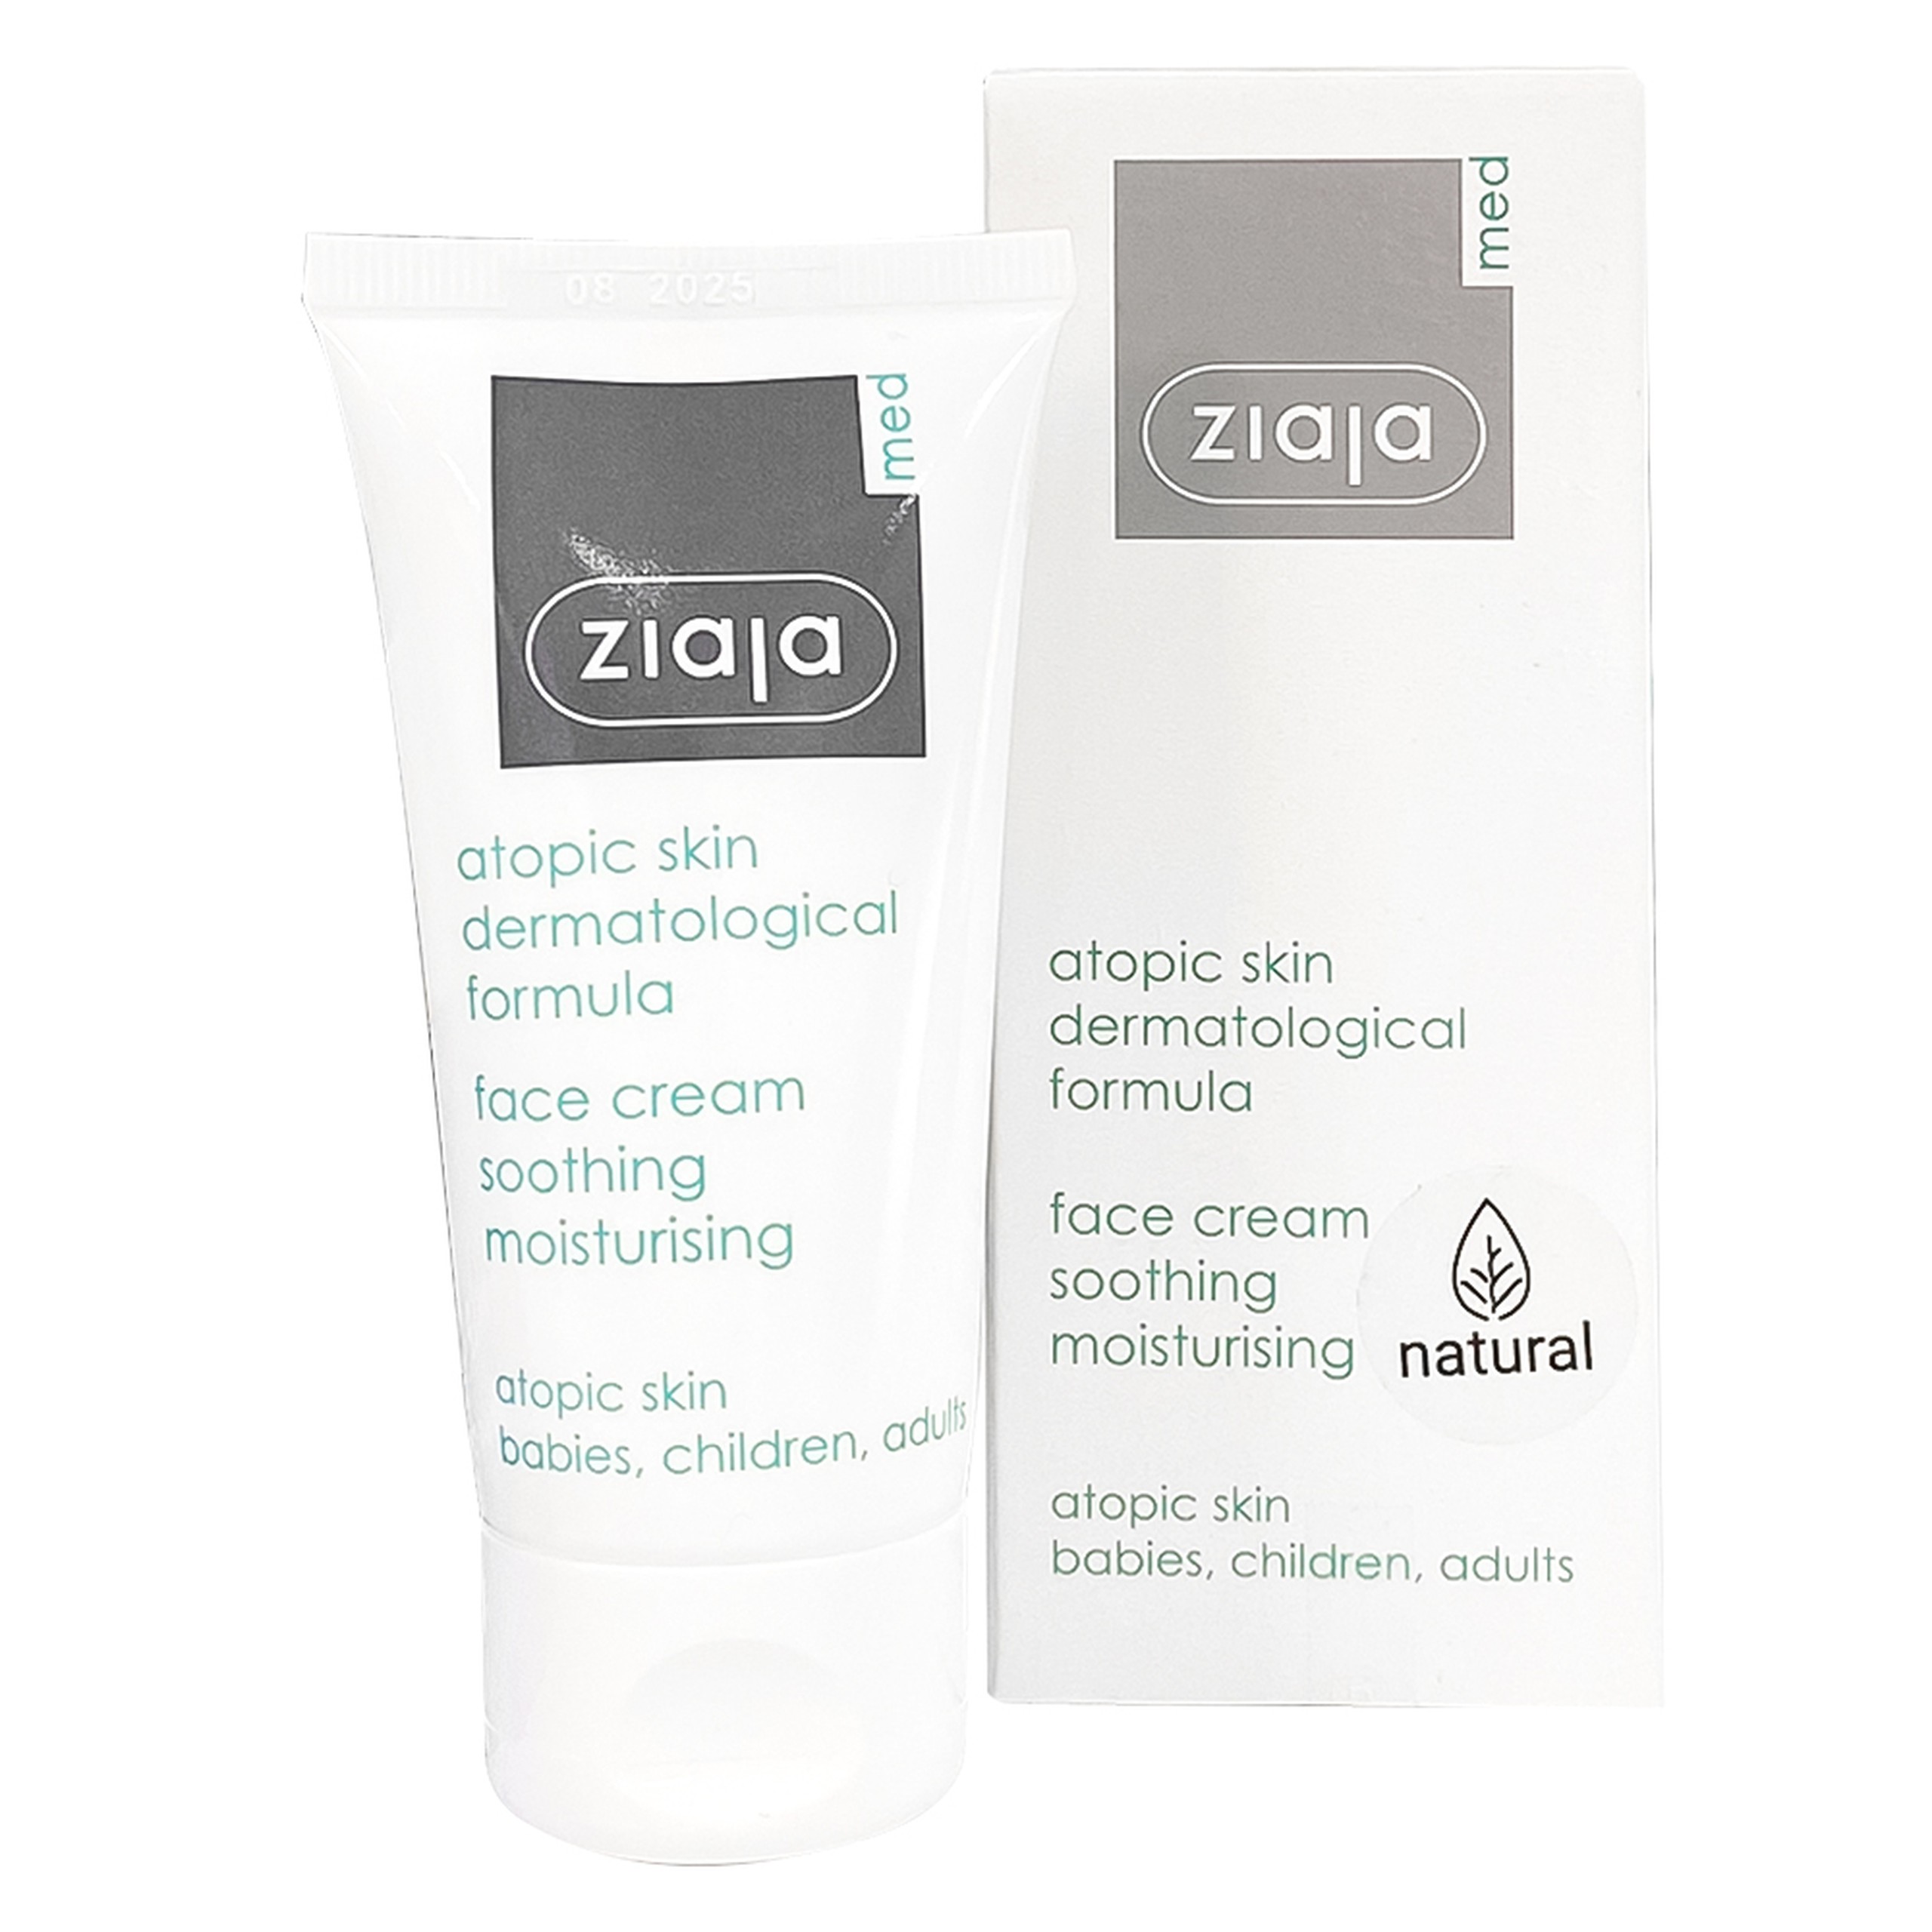 Kem dưỡng da mặt Ziaja Med Atopic Skin Dermatological Formula Face Cream giúp dưỡng ẩm và làm mềm da, giảm khô da (50ml)